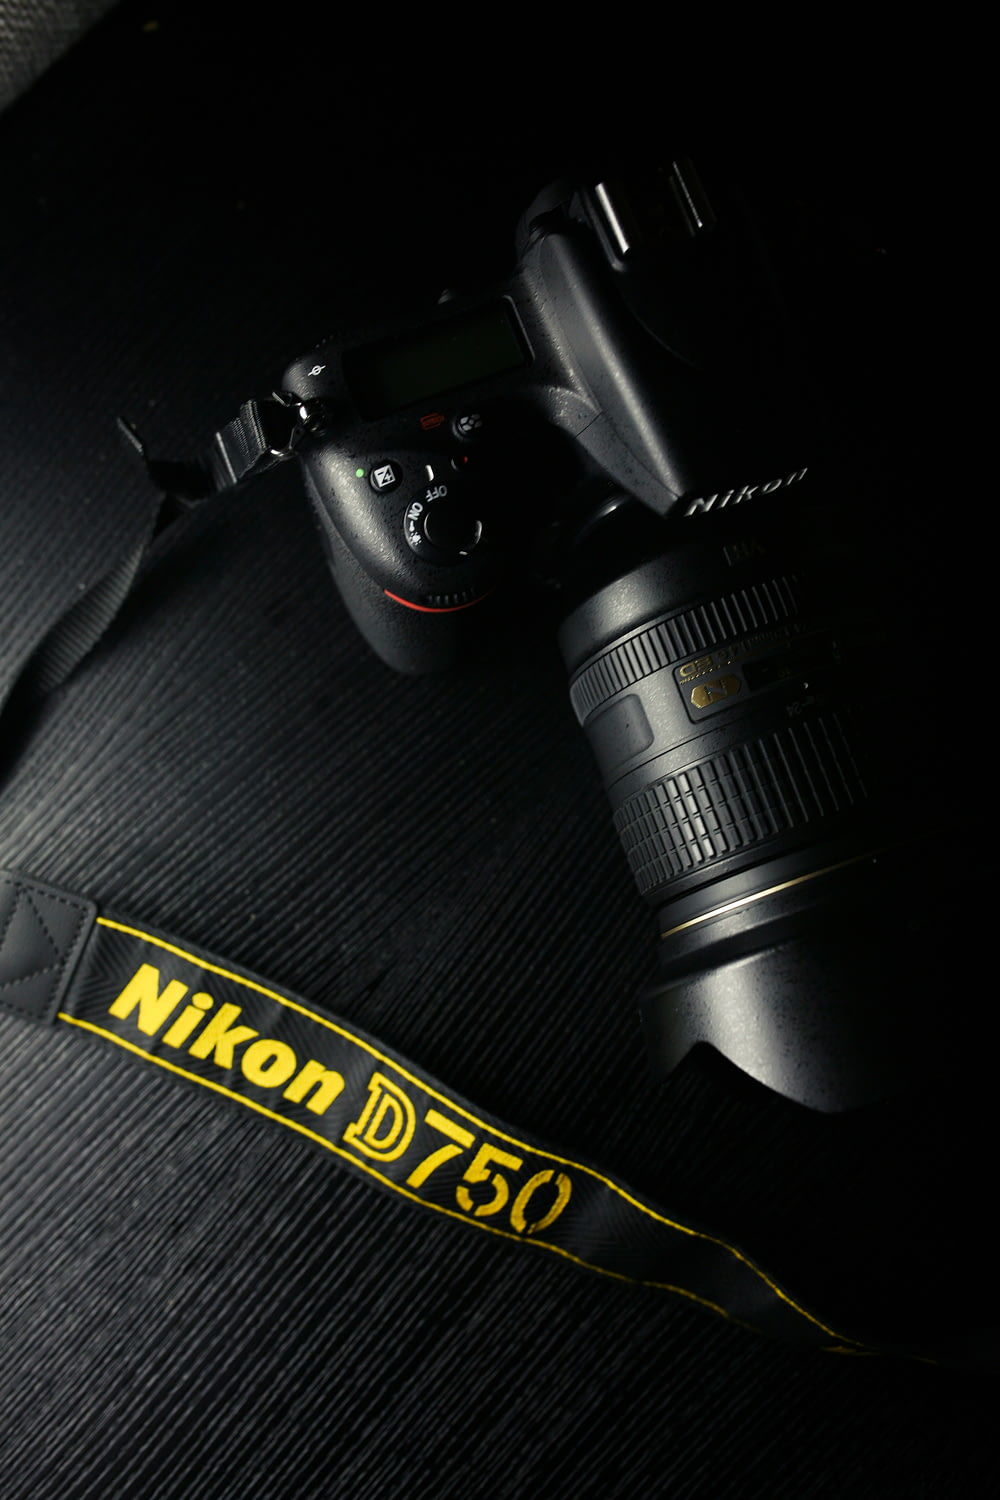 Cámara réflex digital Nikon negra sobre textil gris